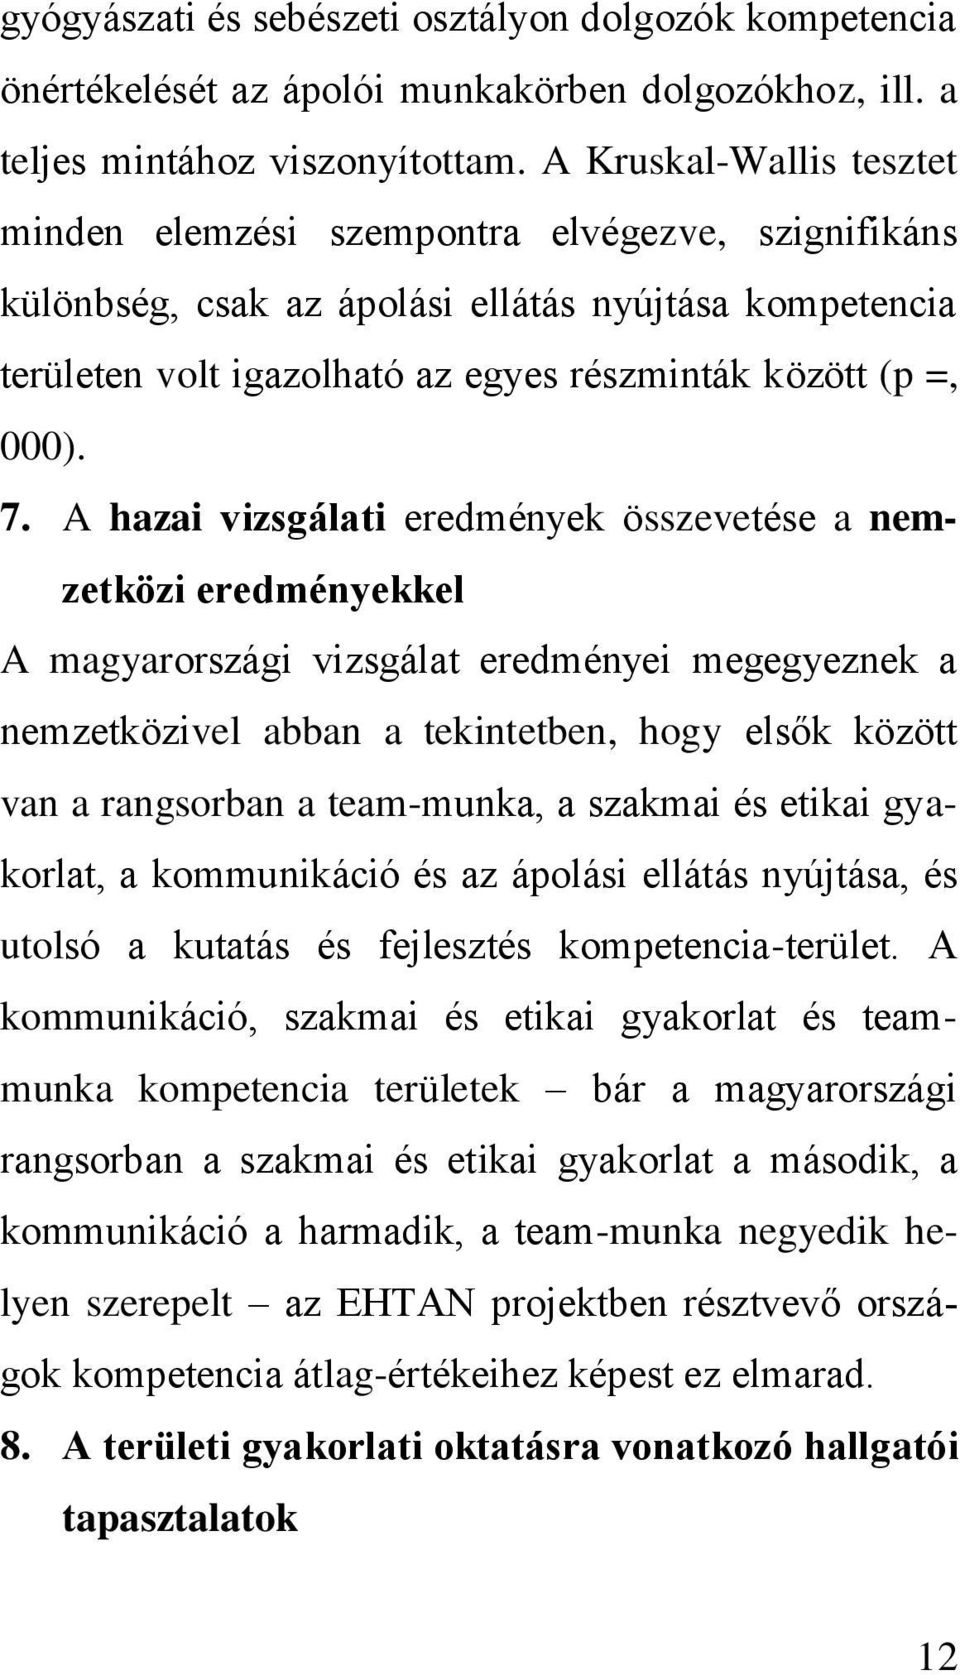 A hazai vizsgálati eredmények összevetése a nemzetközi eredményekkel A magyarországi vizsgálat eredményei megegyeznek a nemzetközivel abban a tekintetben, hogy elsők között van a rangsorban a